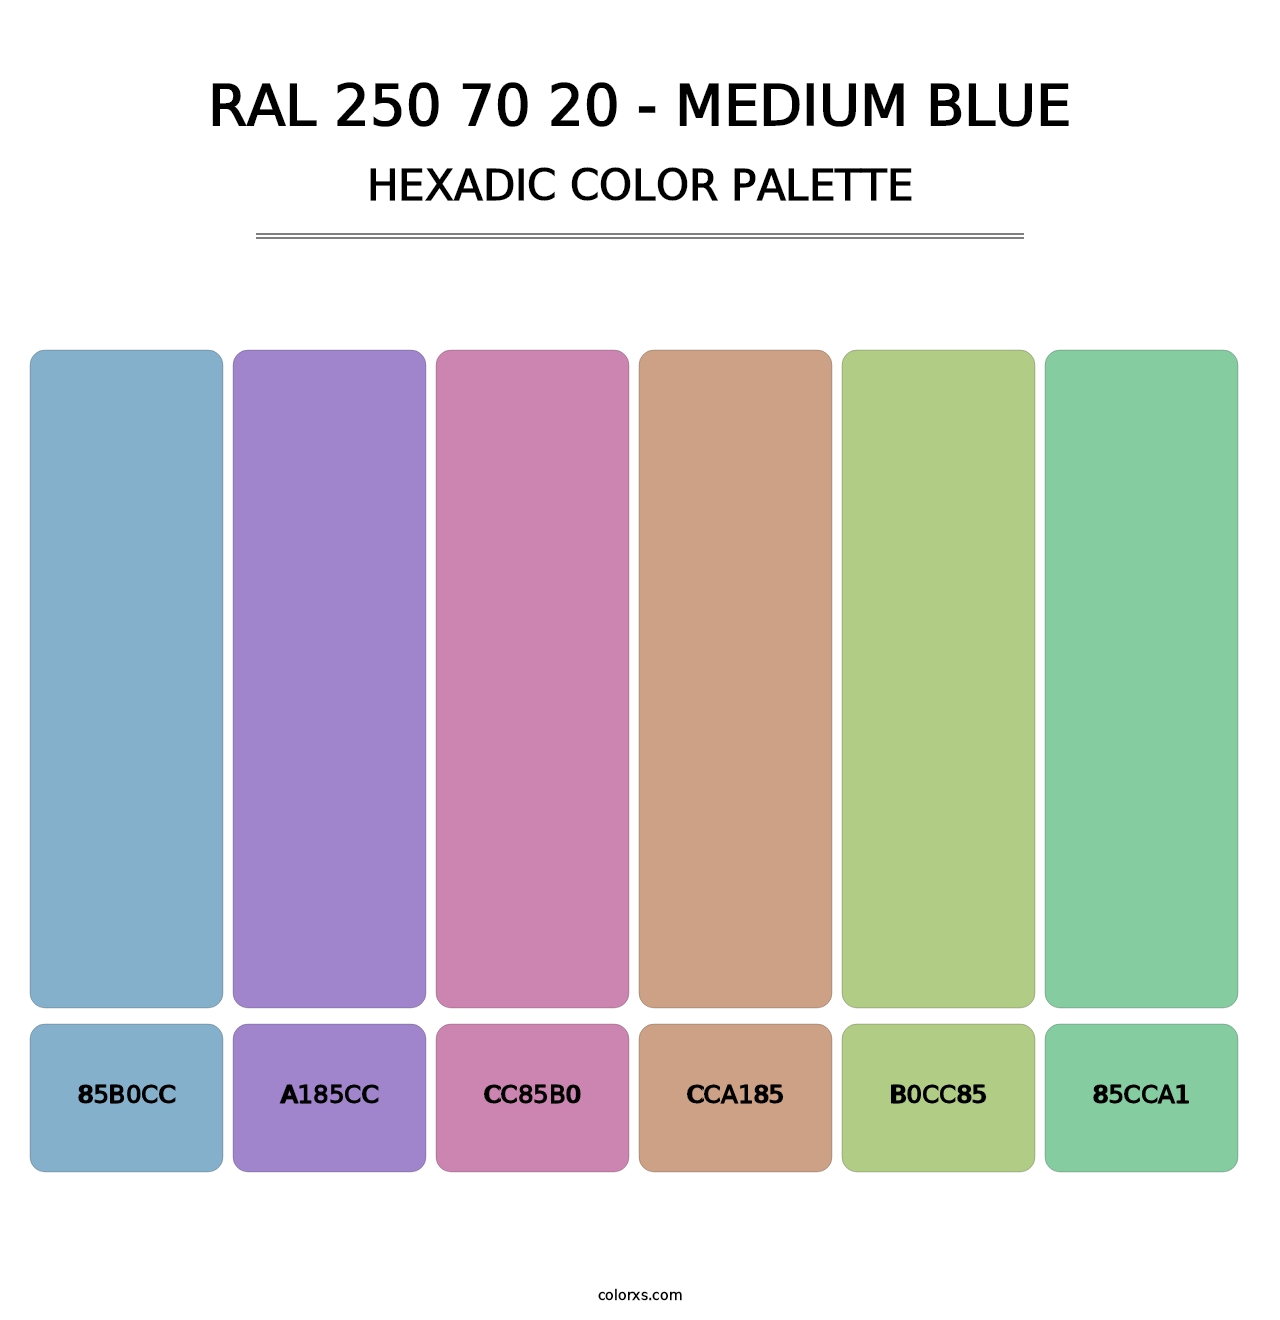 RAL 250 70 20 - Medium Blue - Hexadic Color Palette